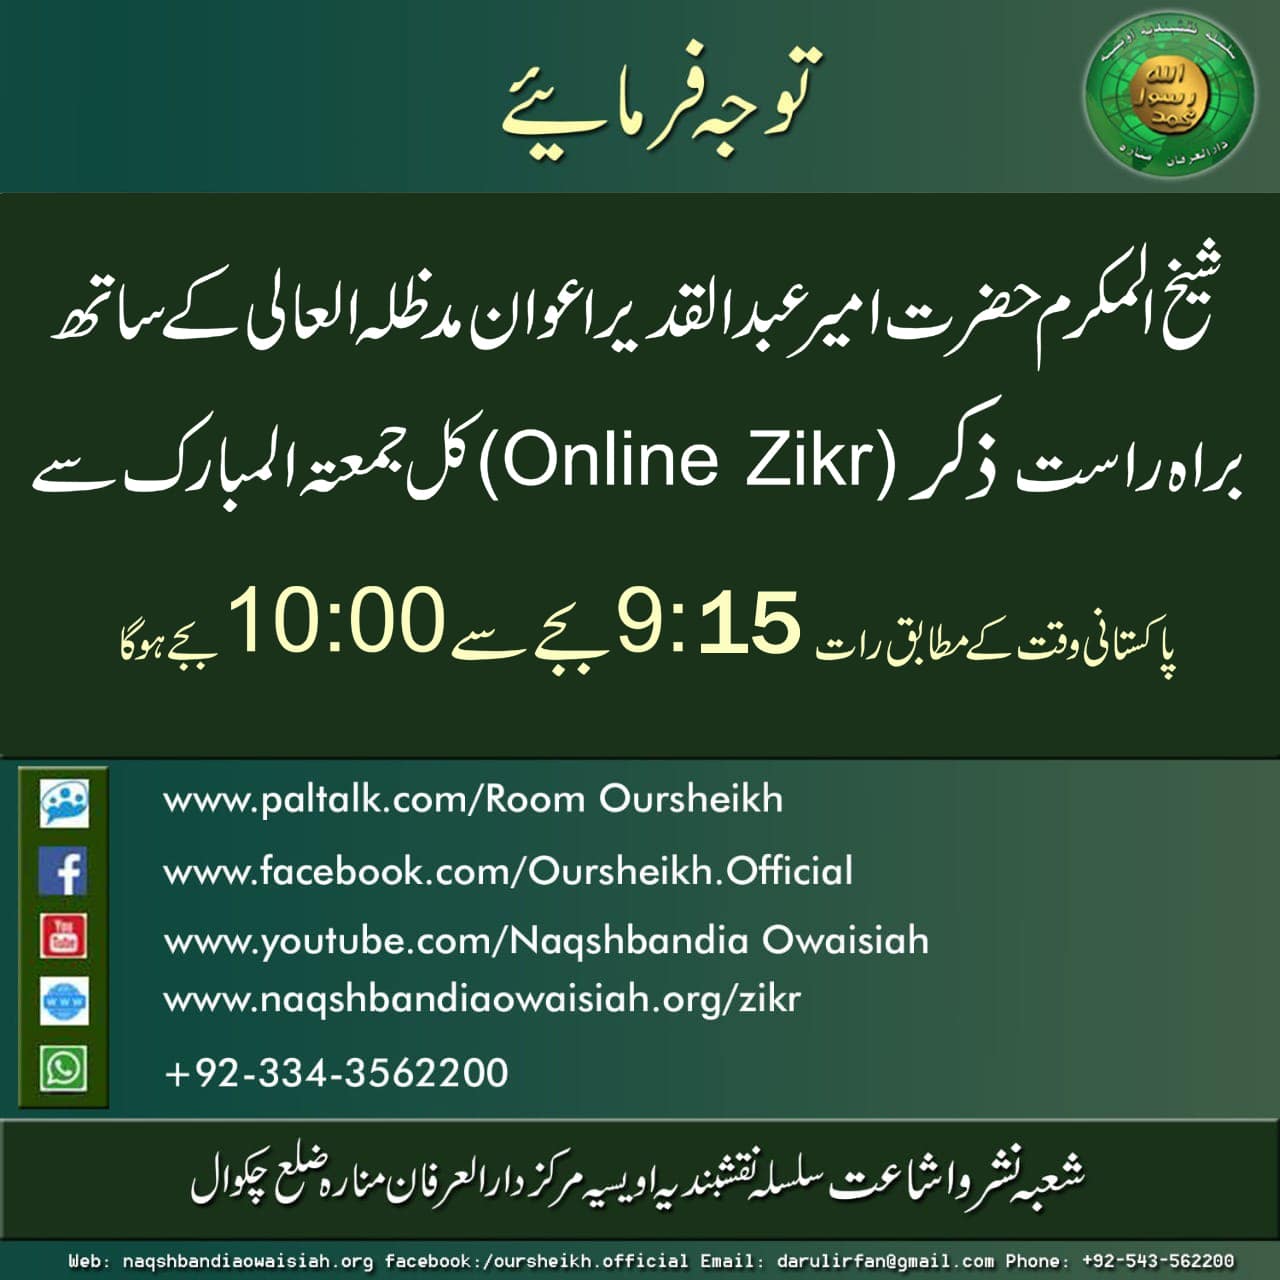 Tabdeeli online Zikr Auqat - 1